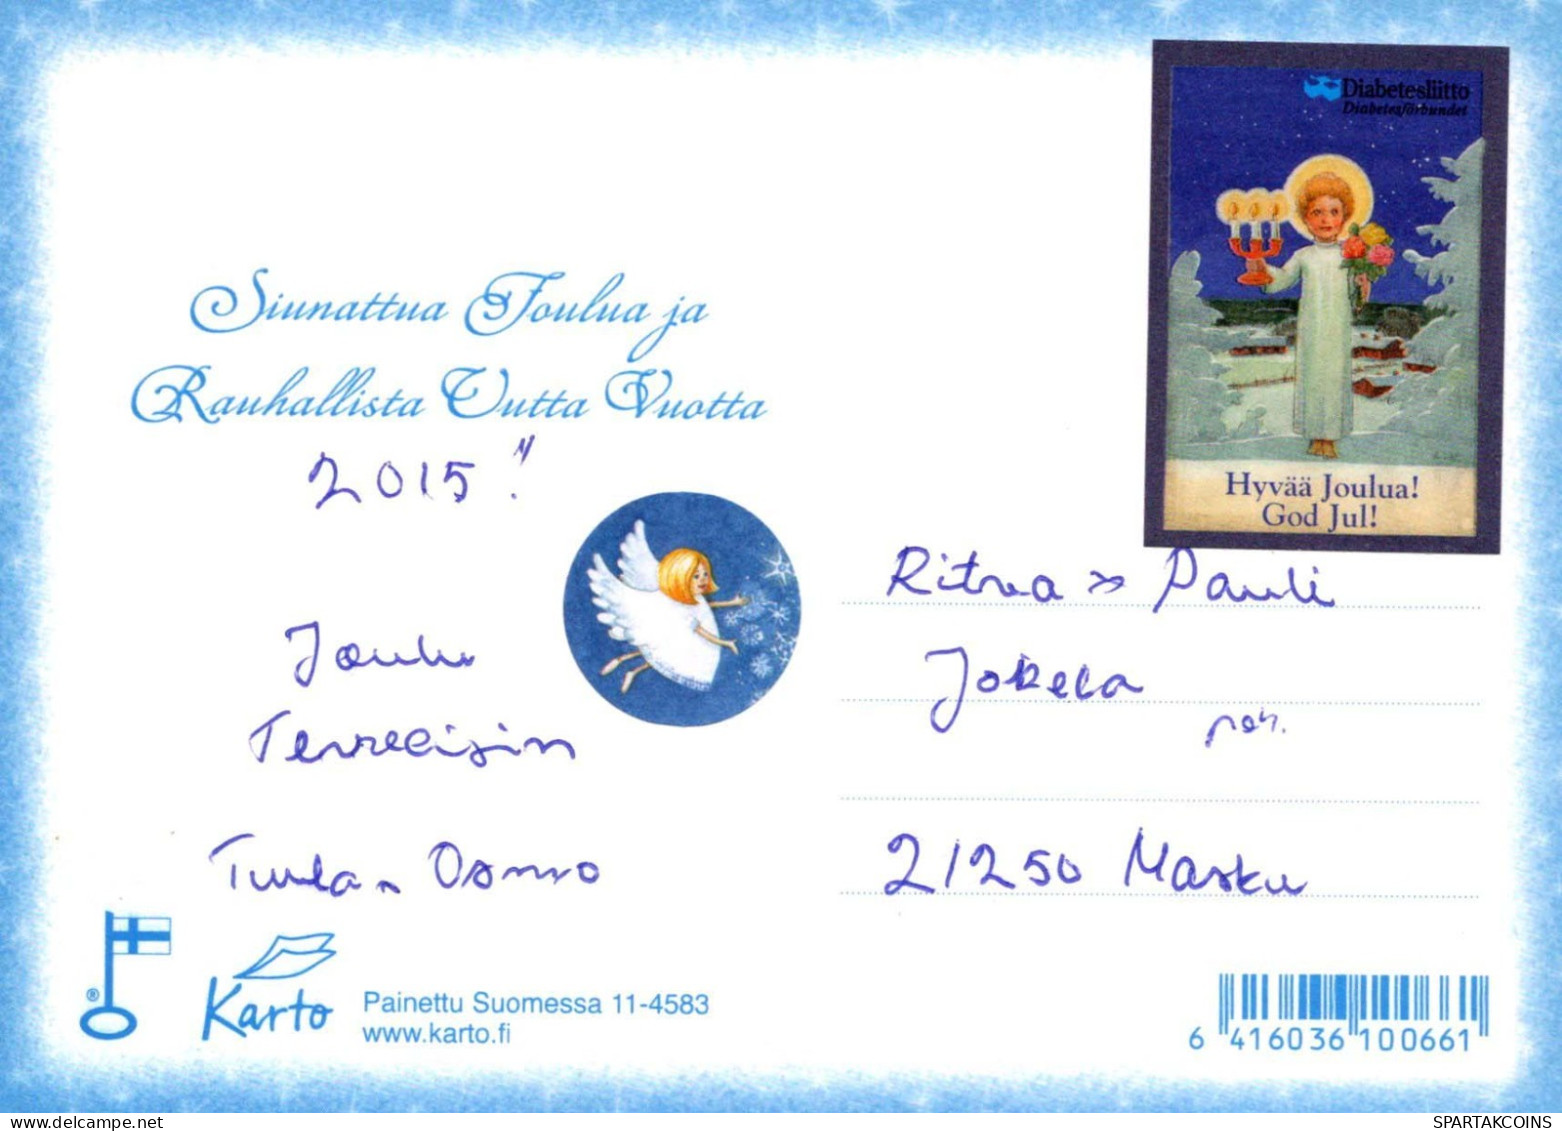 Jungfrau Maria Madonna Jesuskind Weihnachten Religion Vintage Ansichtskarte Postkarte CPSM #PBB966.A - Virgen Maria Y Las Madonnas